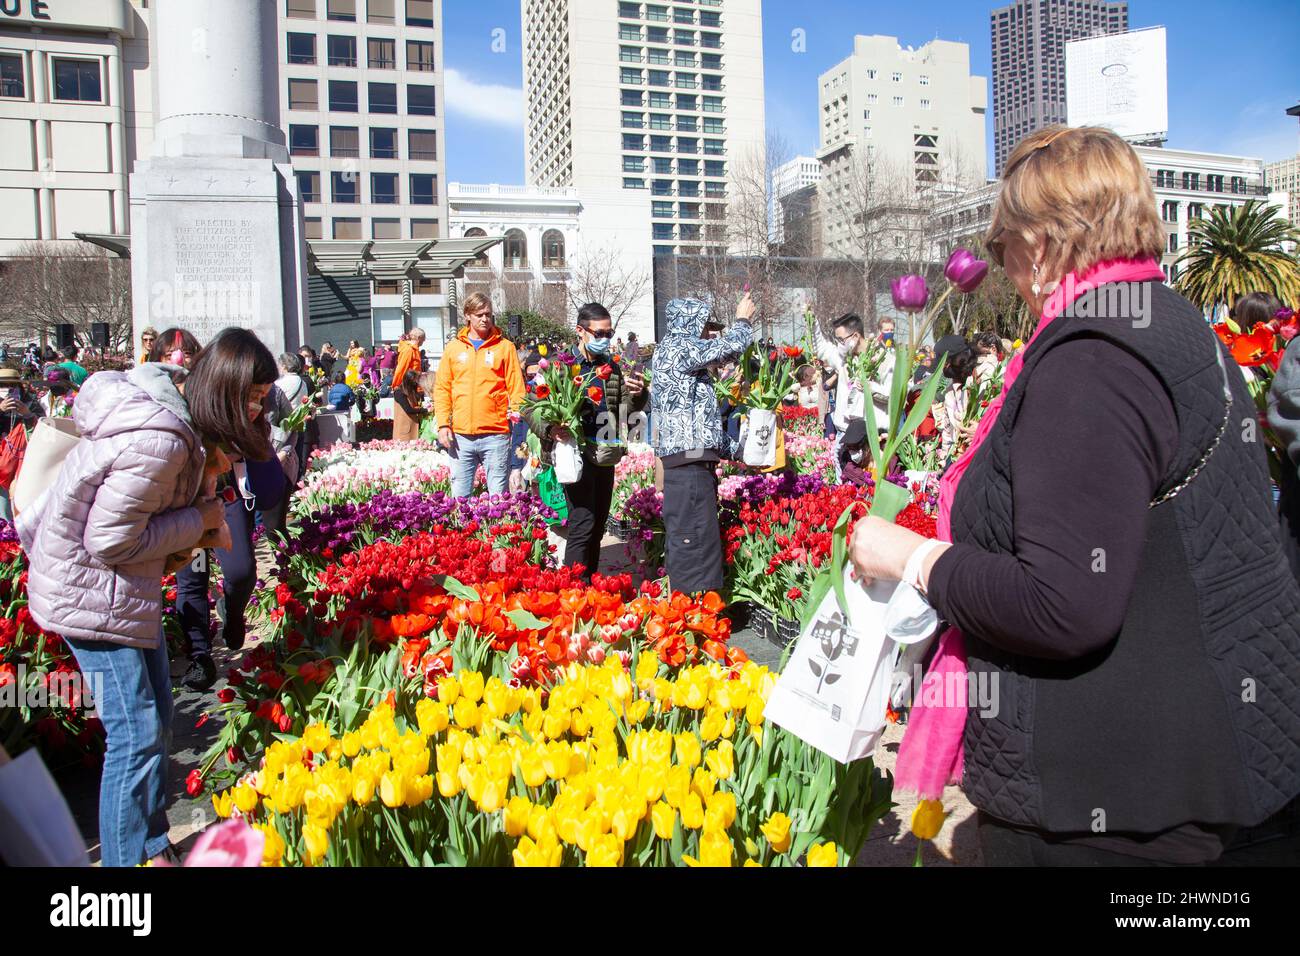 Tulips gratuits attirent des milliers de personnes vers S.F. Union Square, Californie Banque D'Images